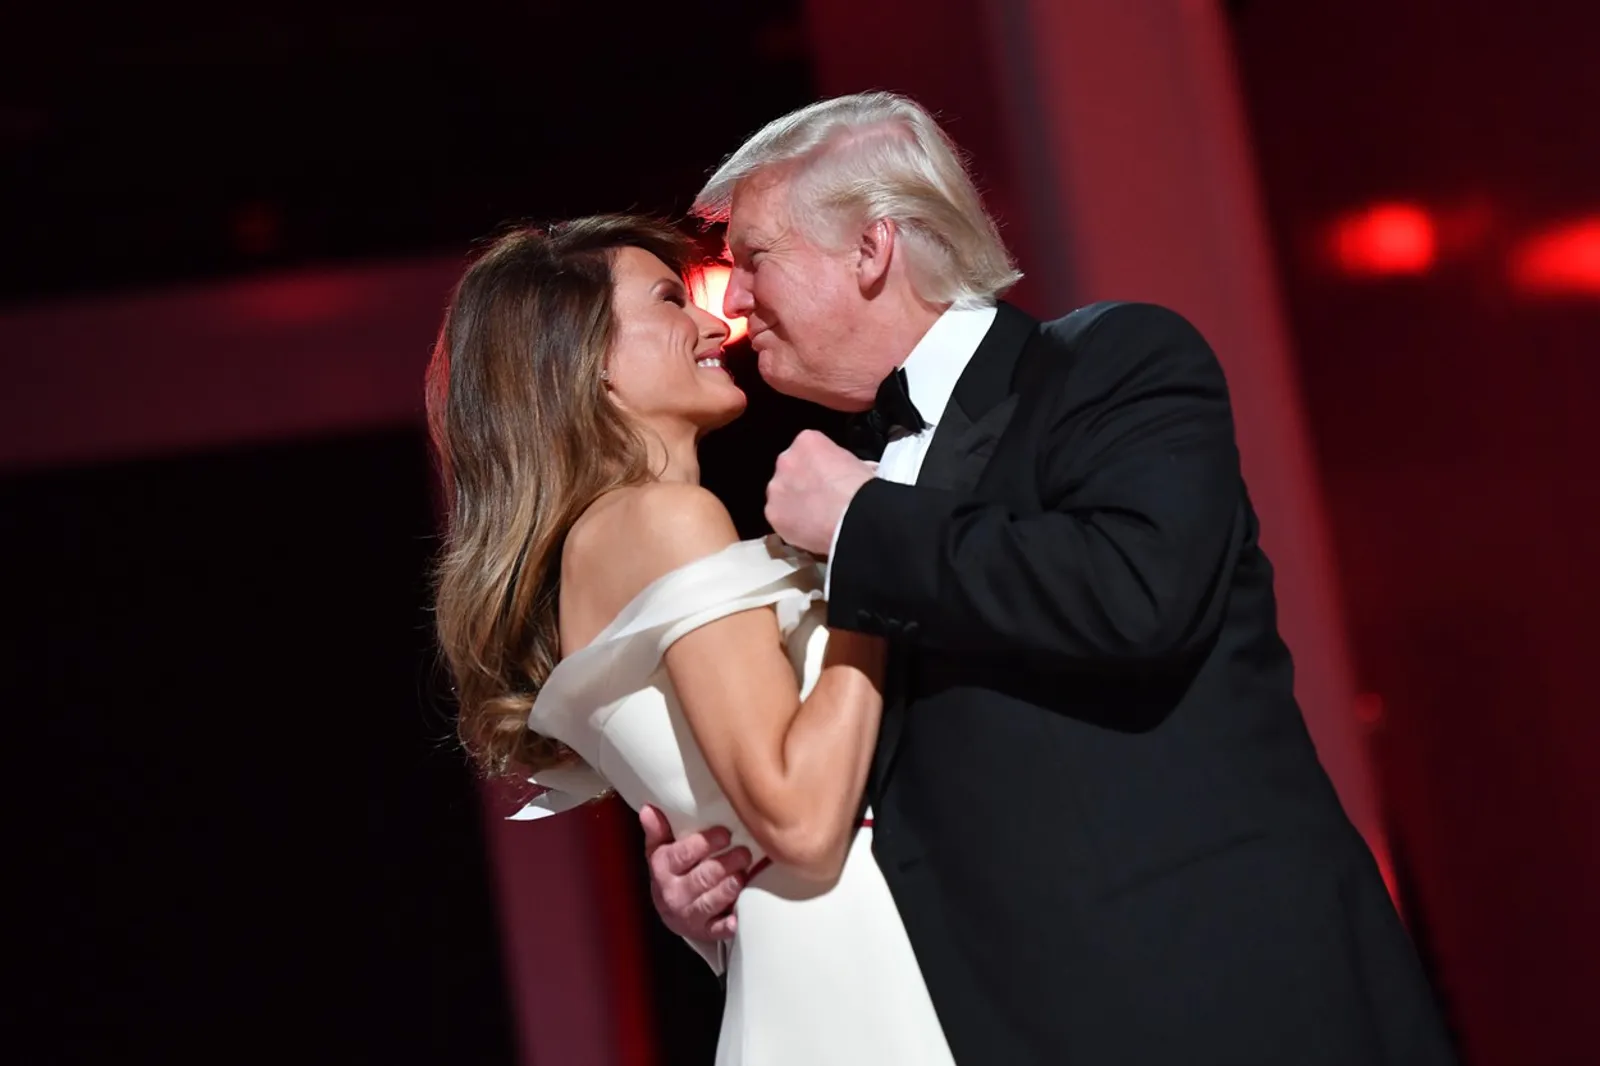 Na dan pobjede Donalda Trumpa 2016., Melania je sa svojim suprugom zaplesala u profinjenoj bijeloj haljini koja joj je istakla vitku liniju. 